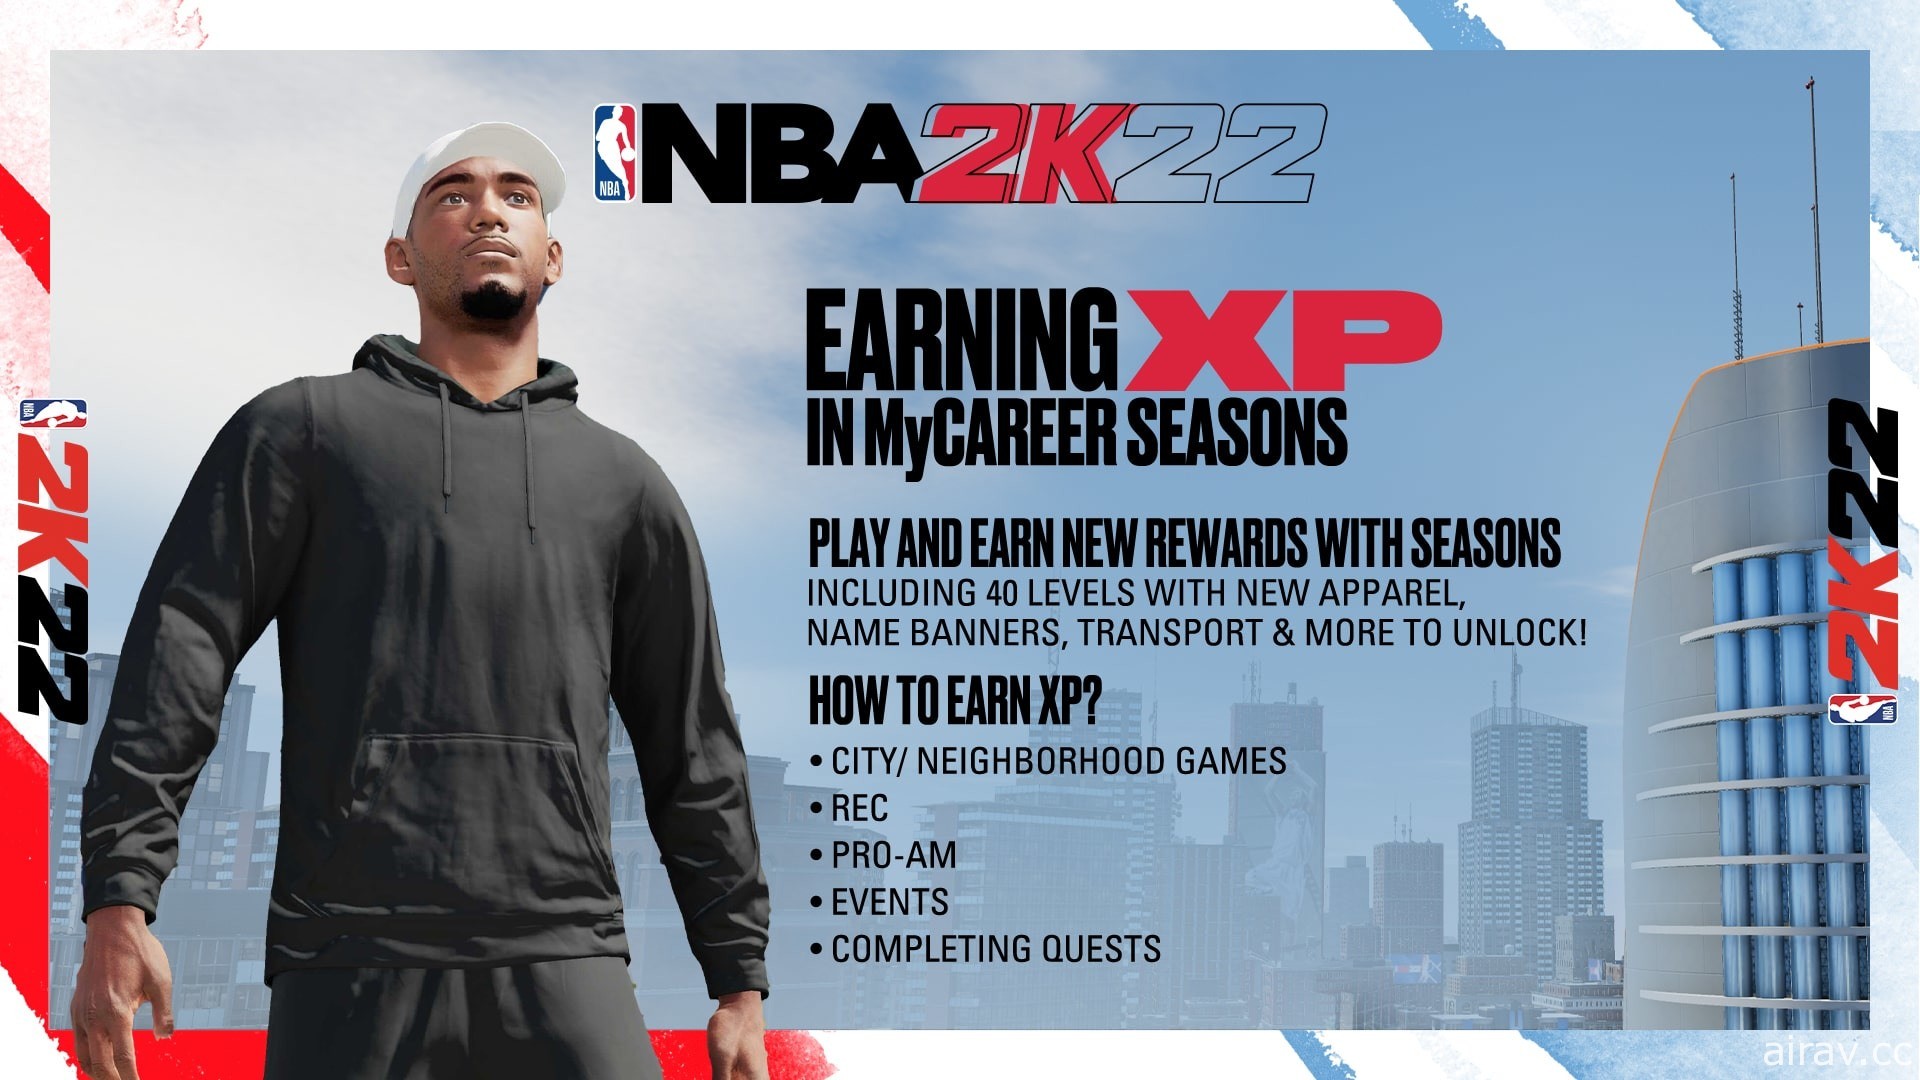 《NBA 2K22》揭露賽季詳細資訊 將帶來新等級、新獎勵和「首個星期五」